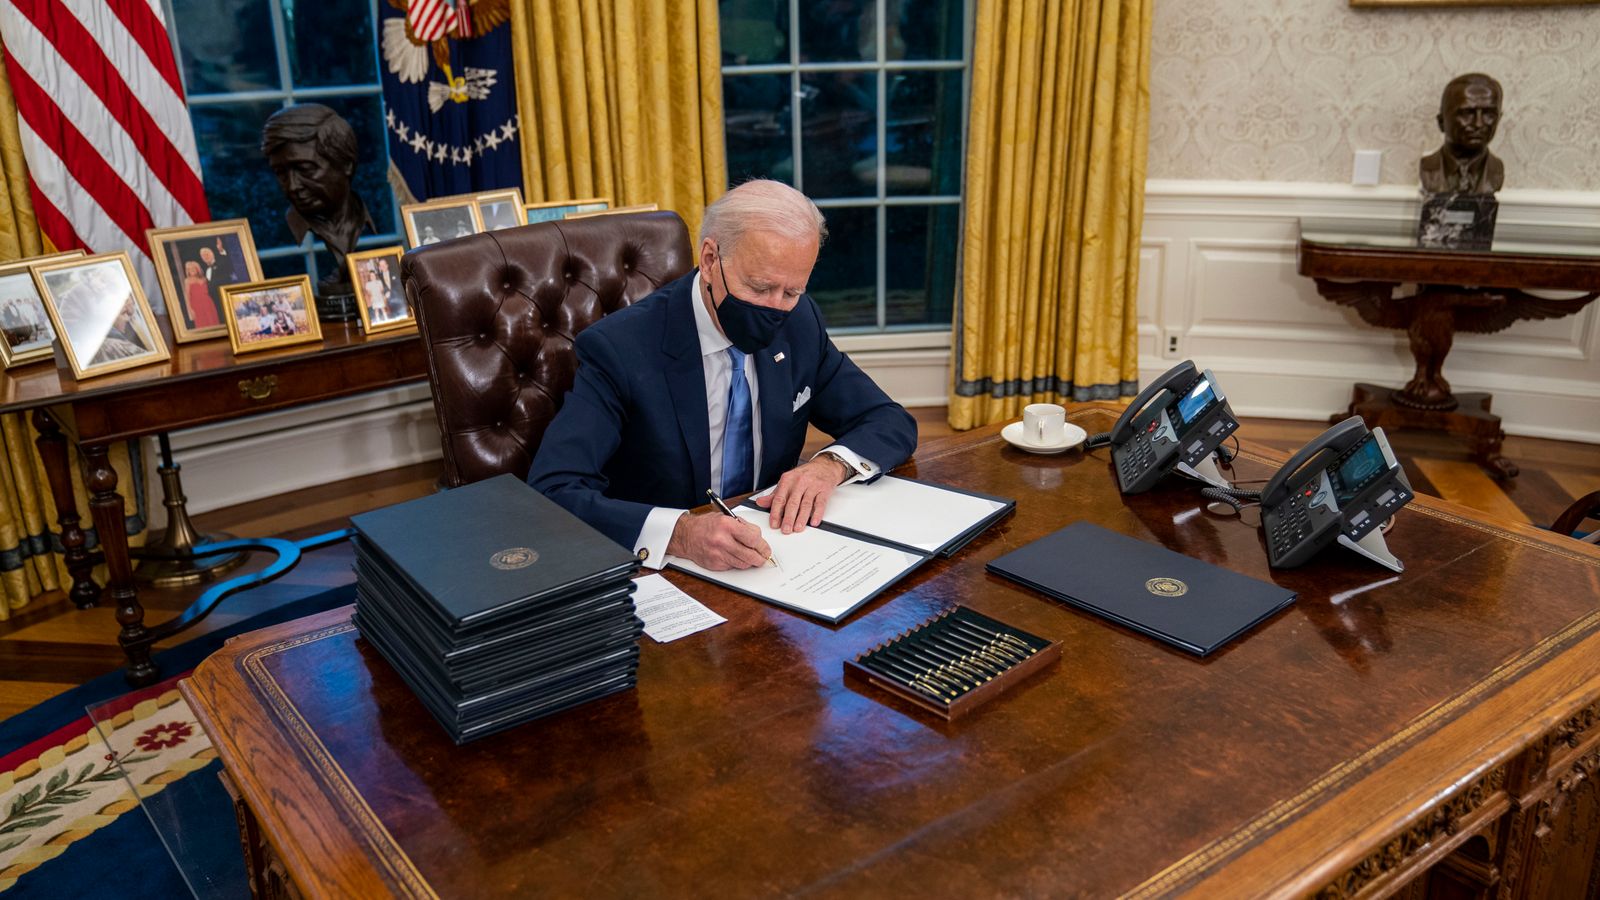 El presidente de los Estados Unidos, Joe Biden, ha estampado su propia marca en la Oficina Oval